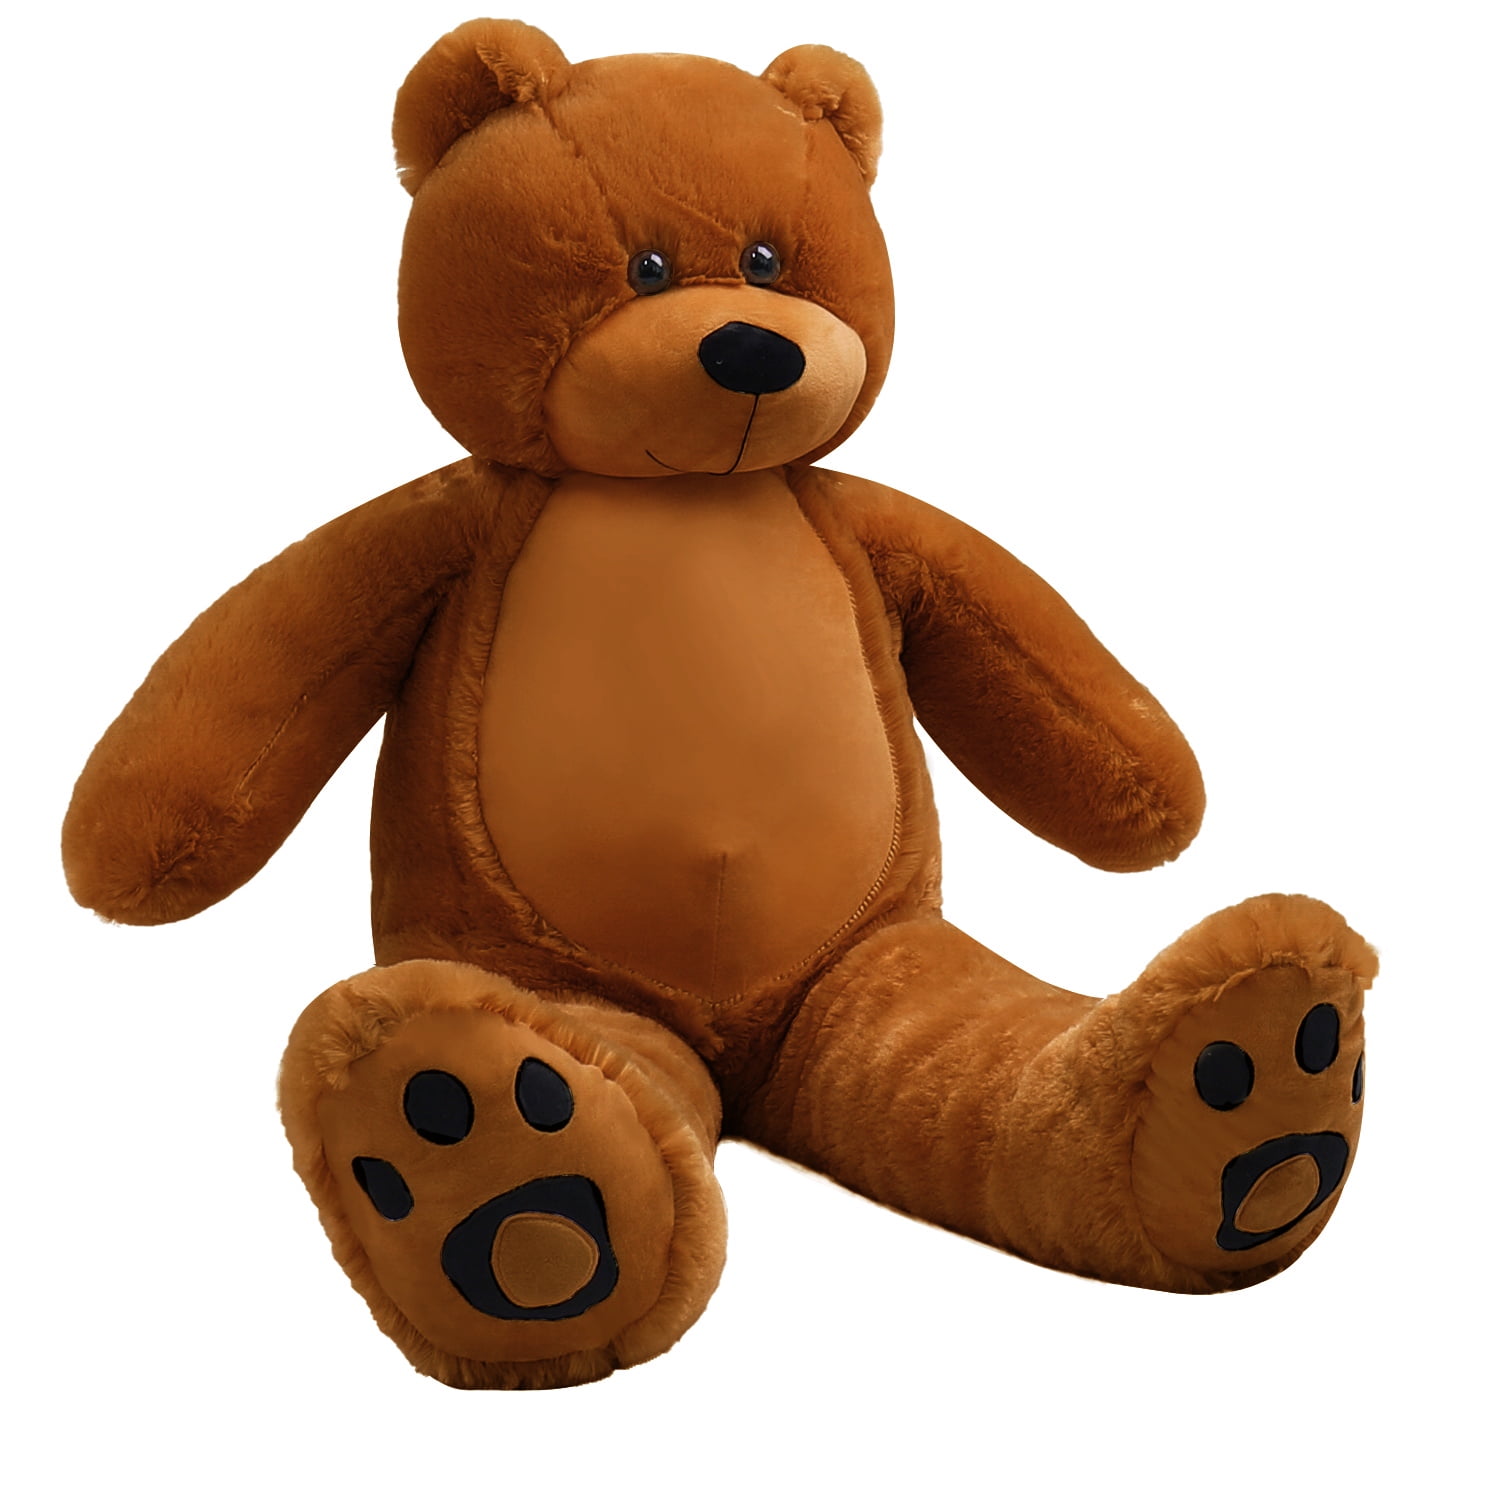 Details about   MaoGoLan Big Teddy Bear Blue Cute Soft Giant Teddy Bear Stuffed Animals Plush... 